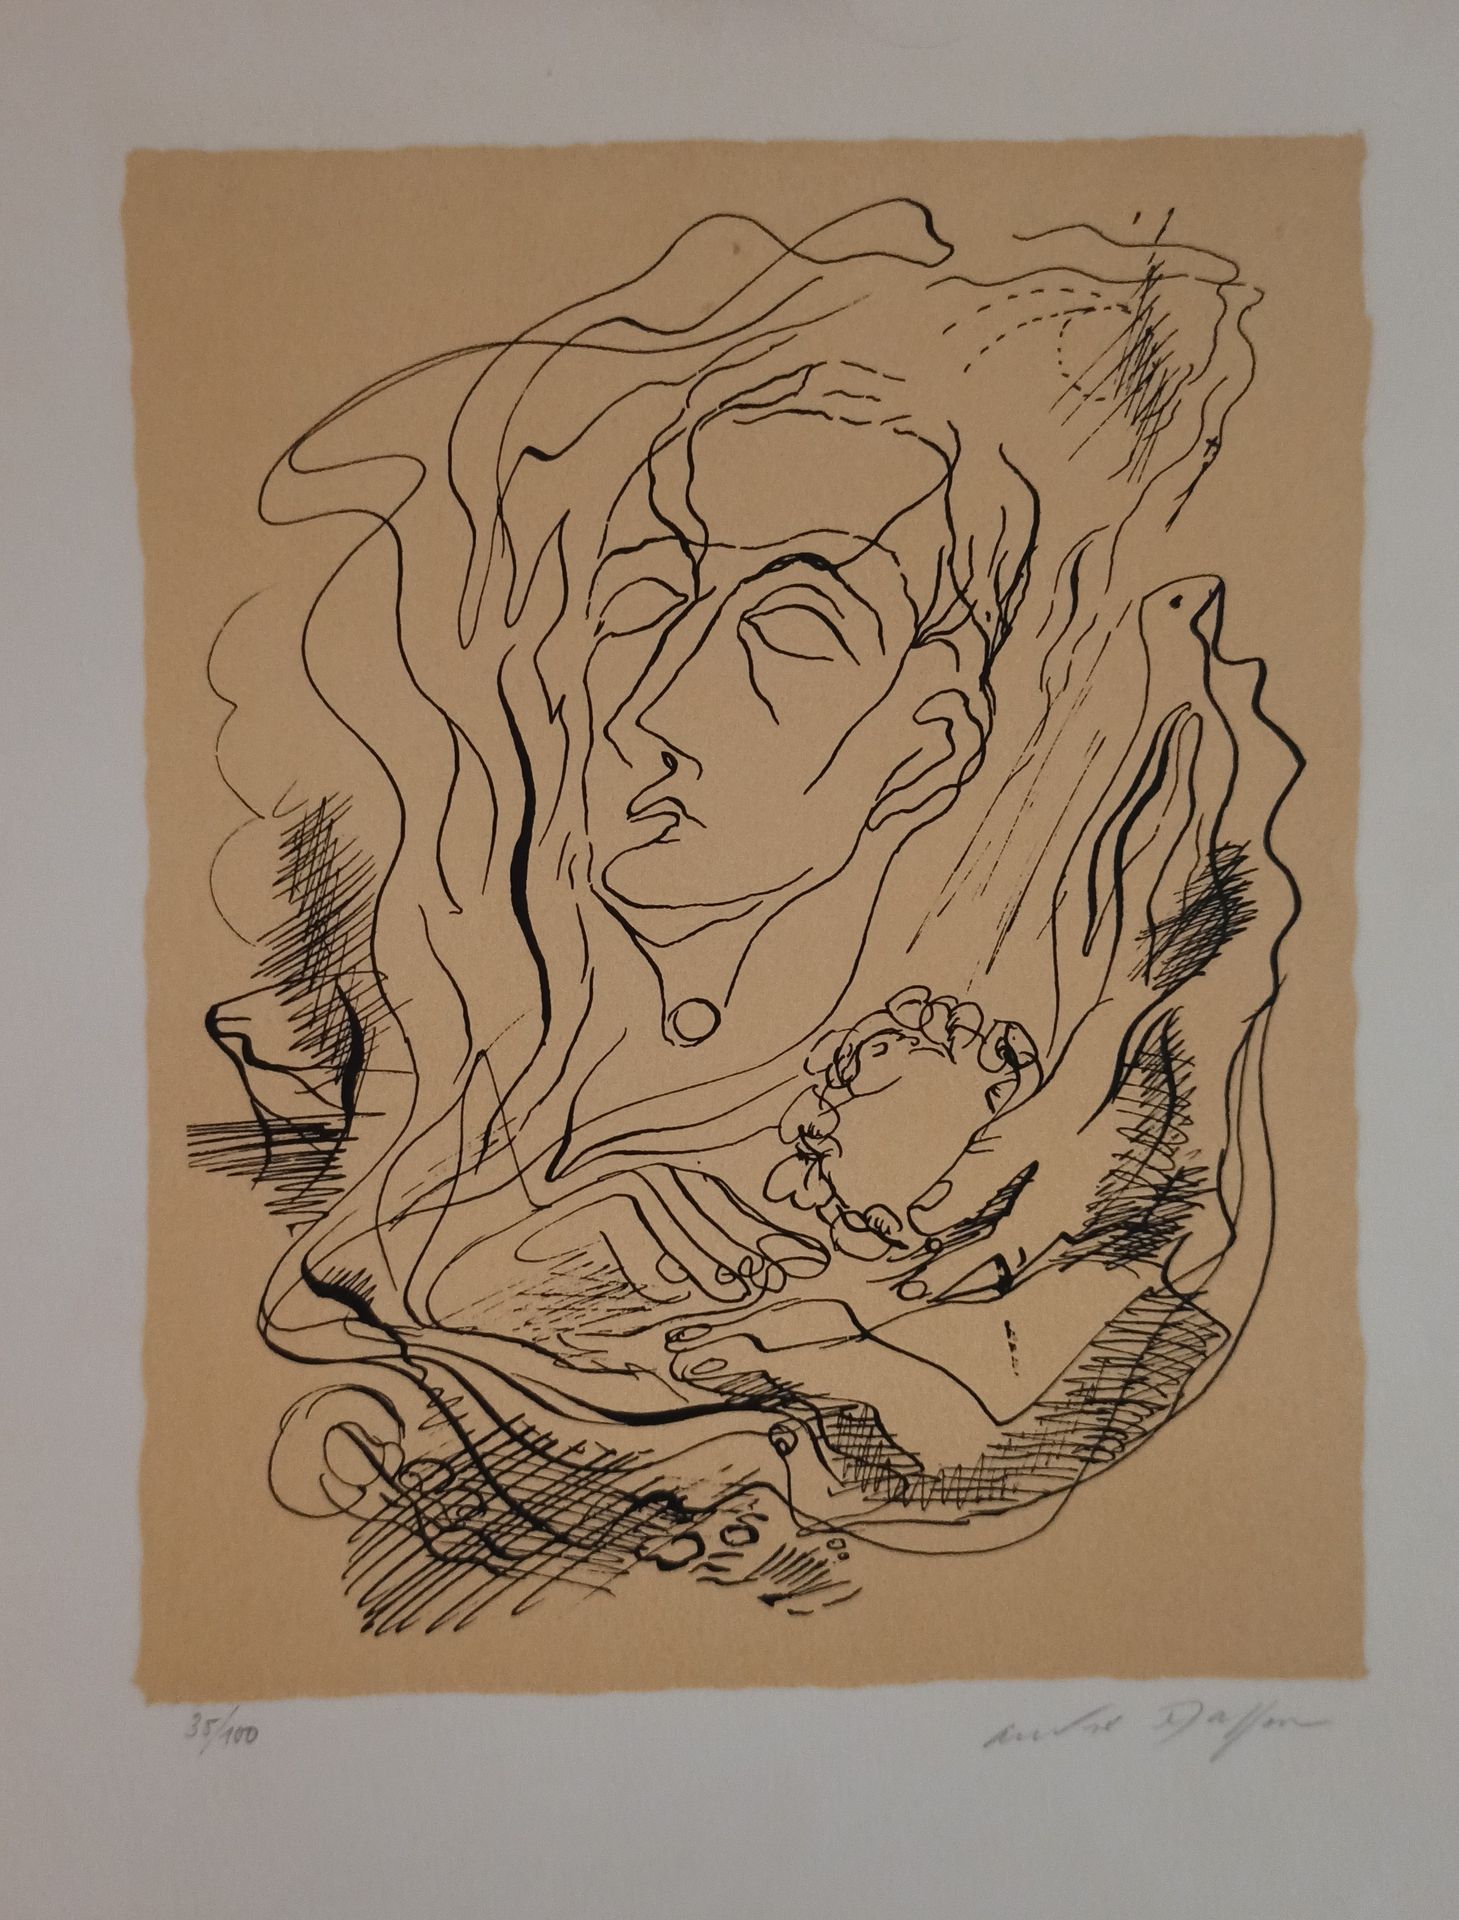 Null 安德烈-马松(1896-1987)

梦想家

石版画右下方有签名，左下方有编号35/100。

45 x 33,5 cm

小型划痕